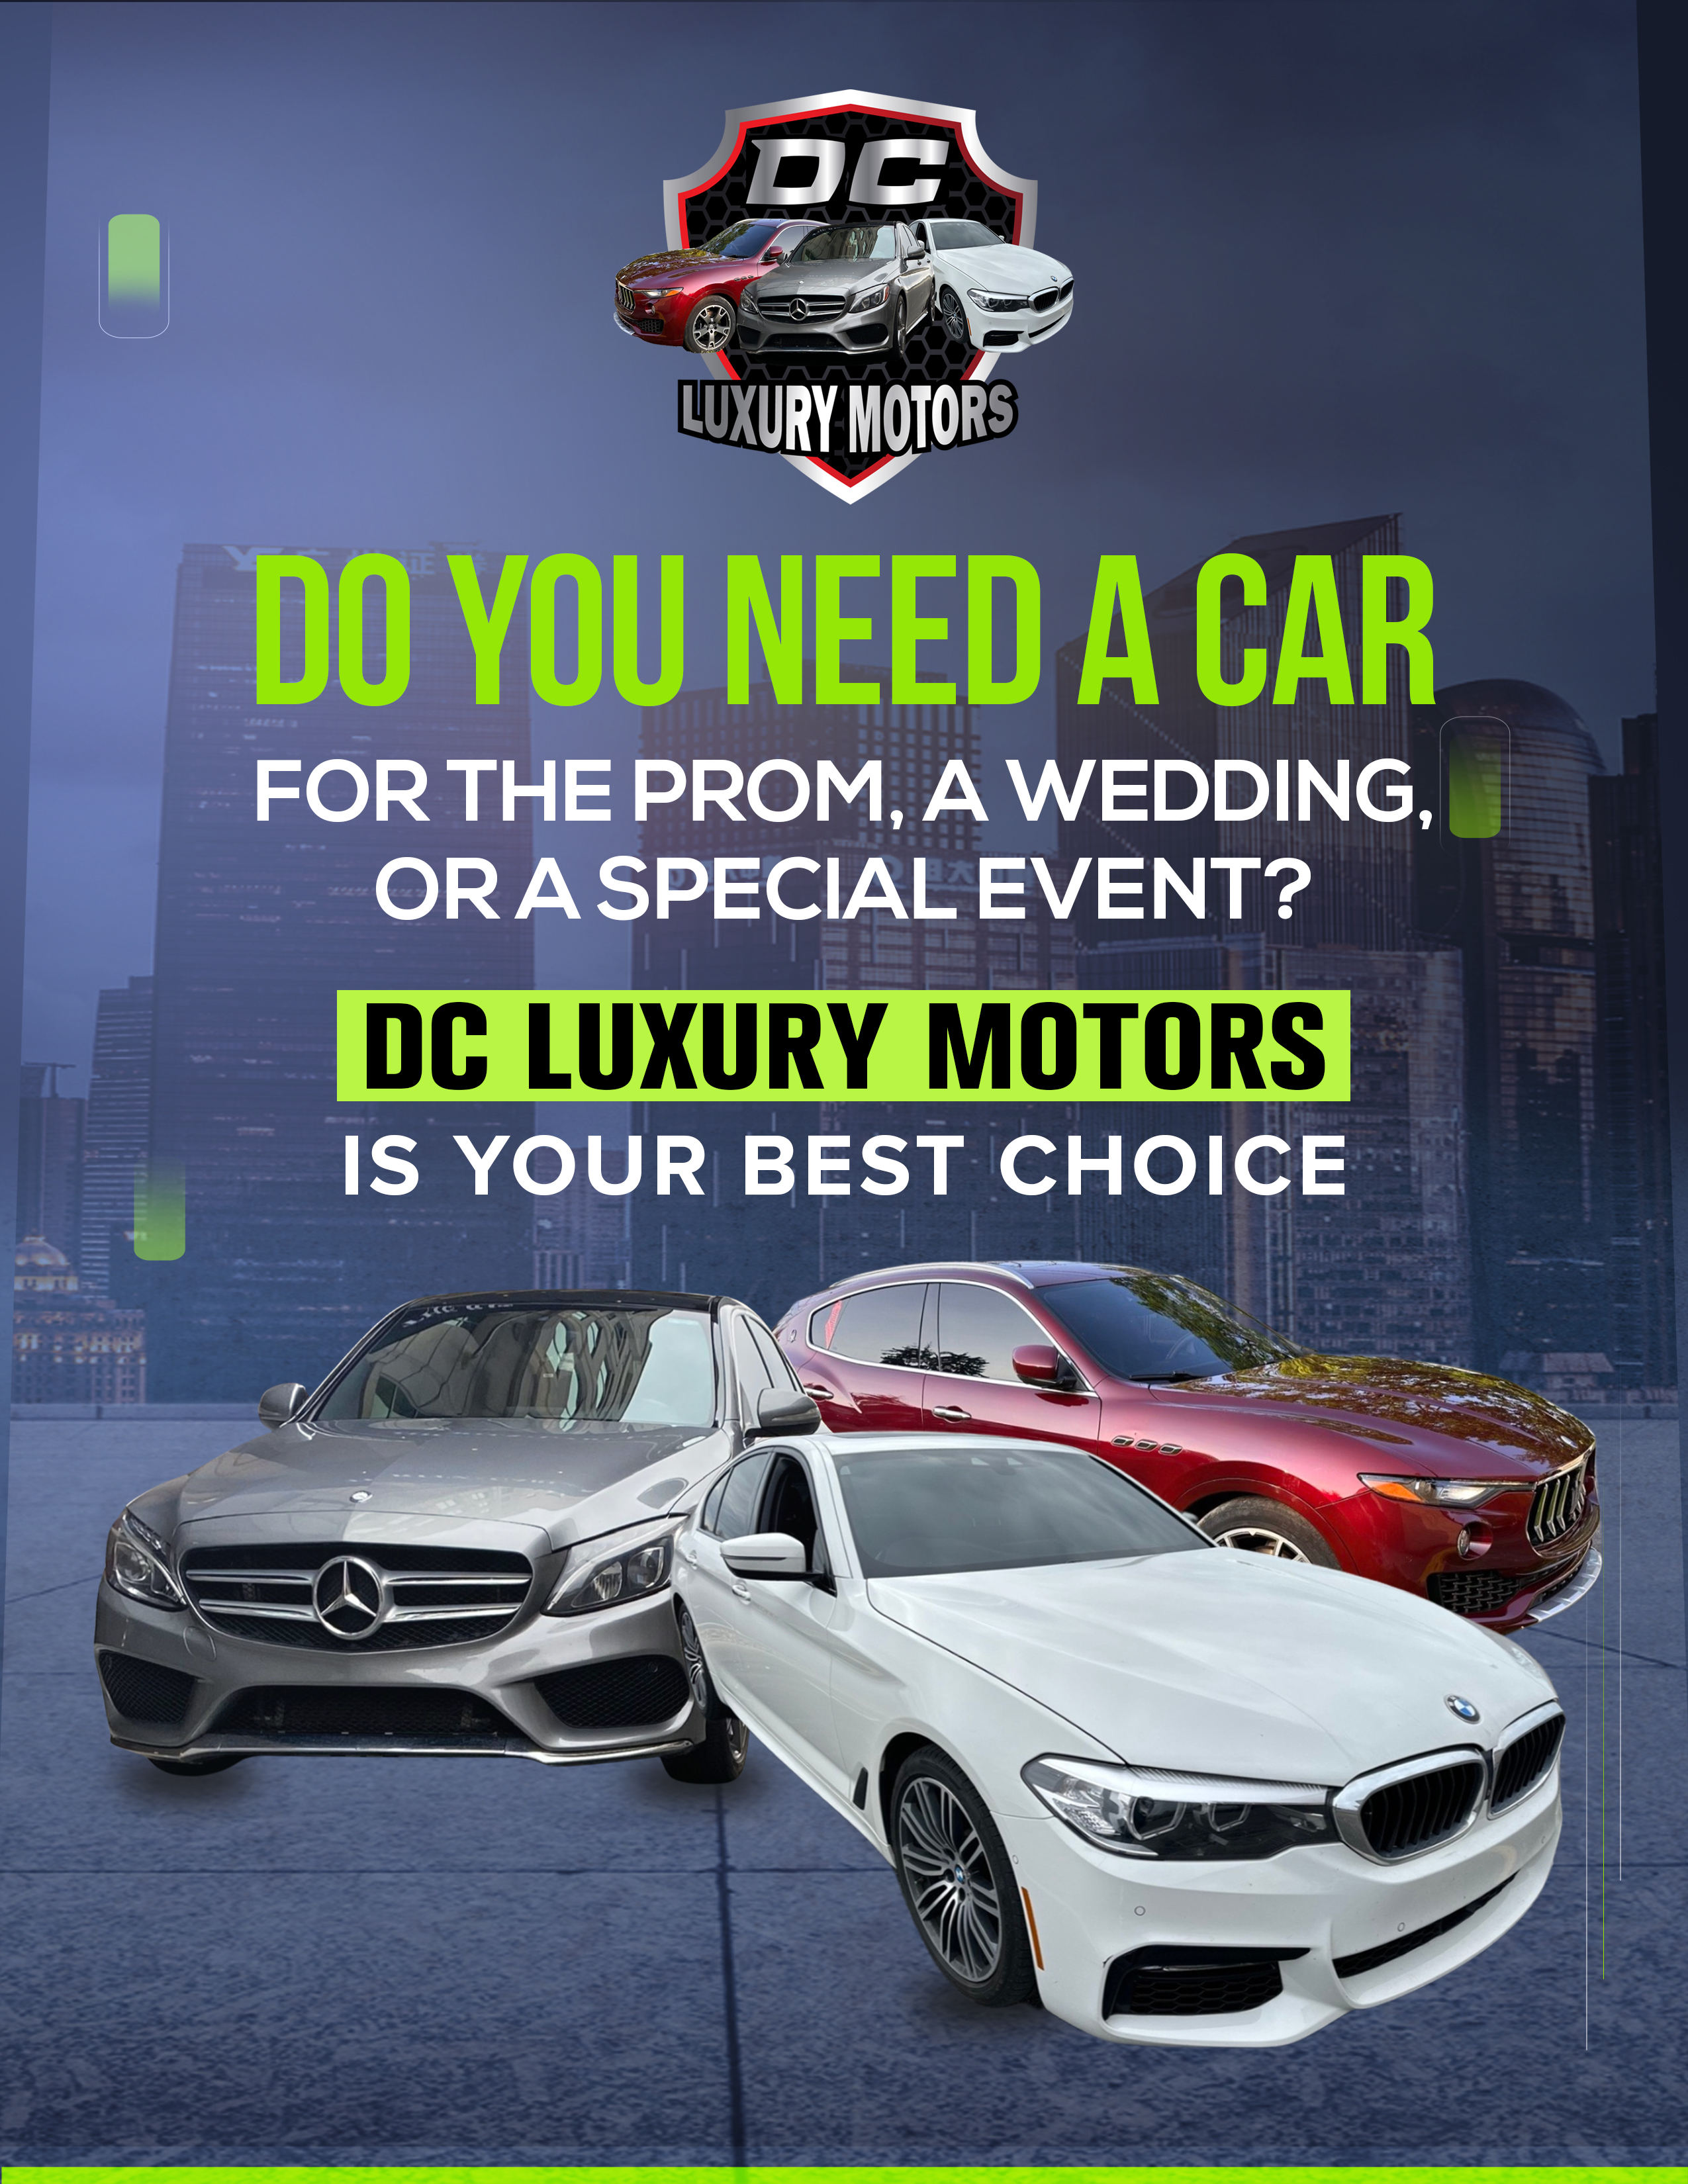 DC Luxury Motors